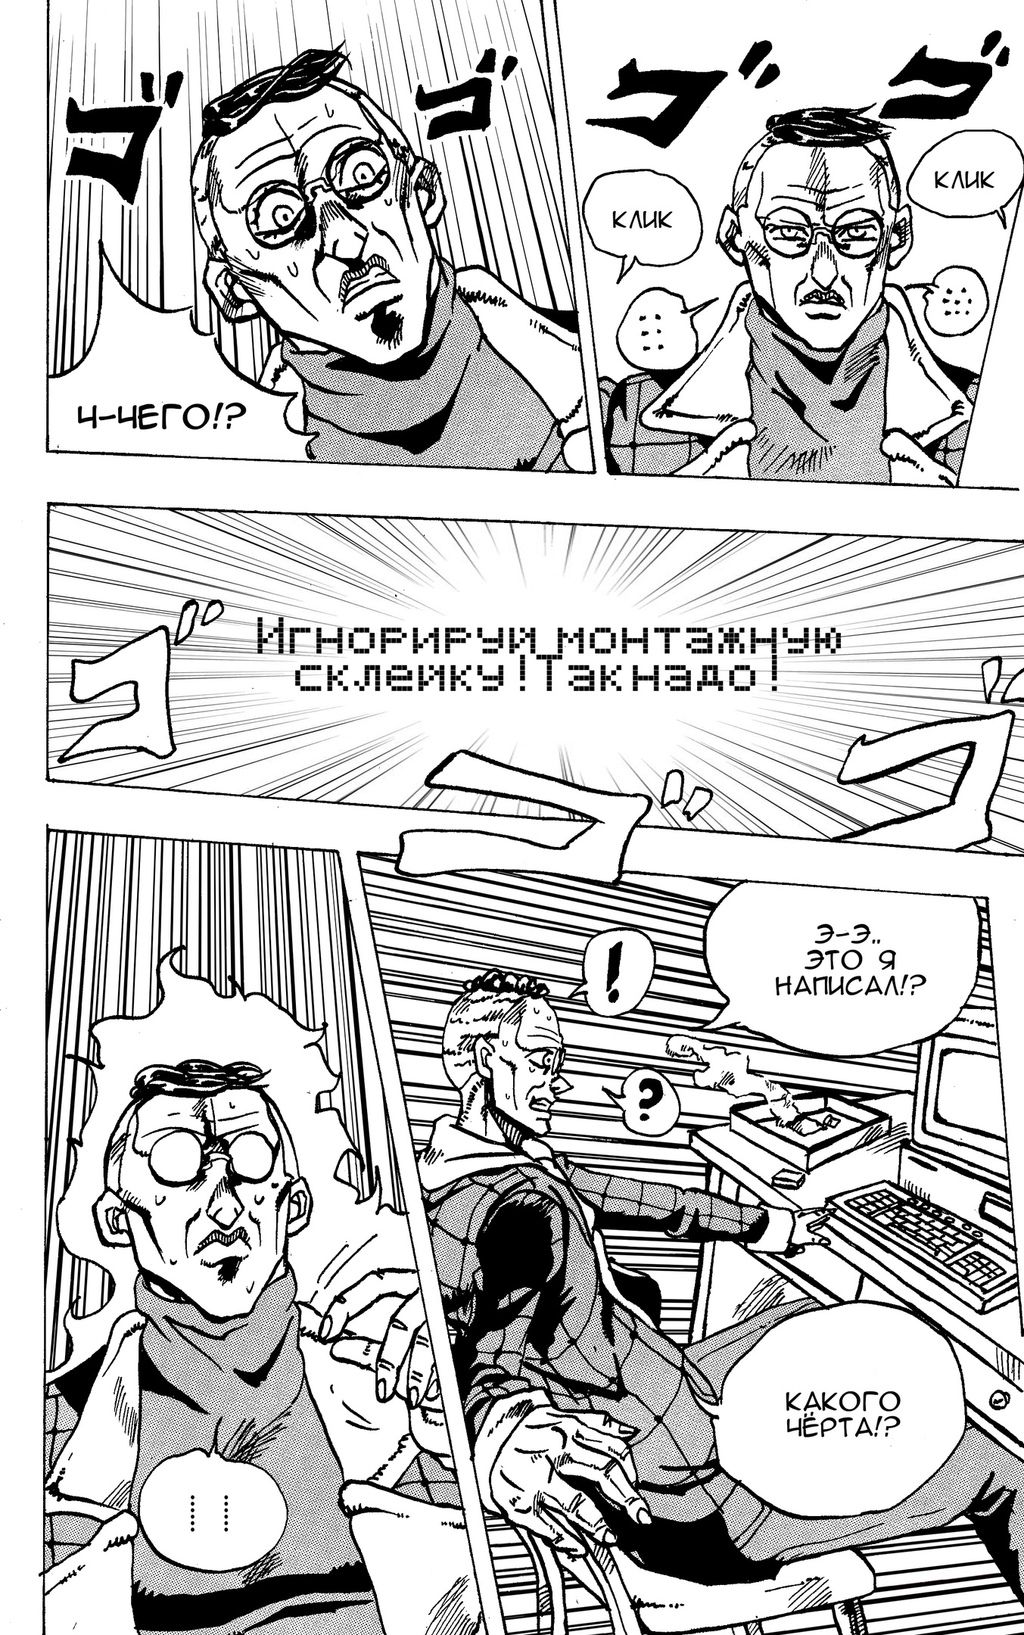 Комикс Moscow Calling: выпуск №115